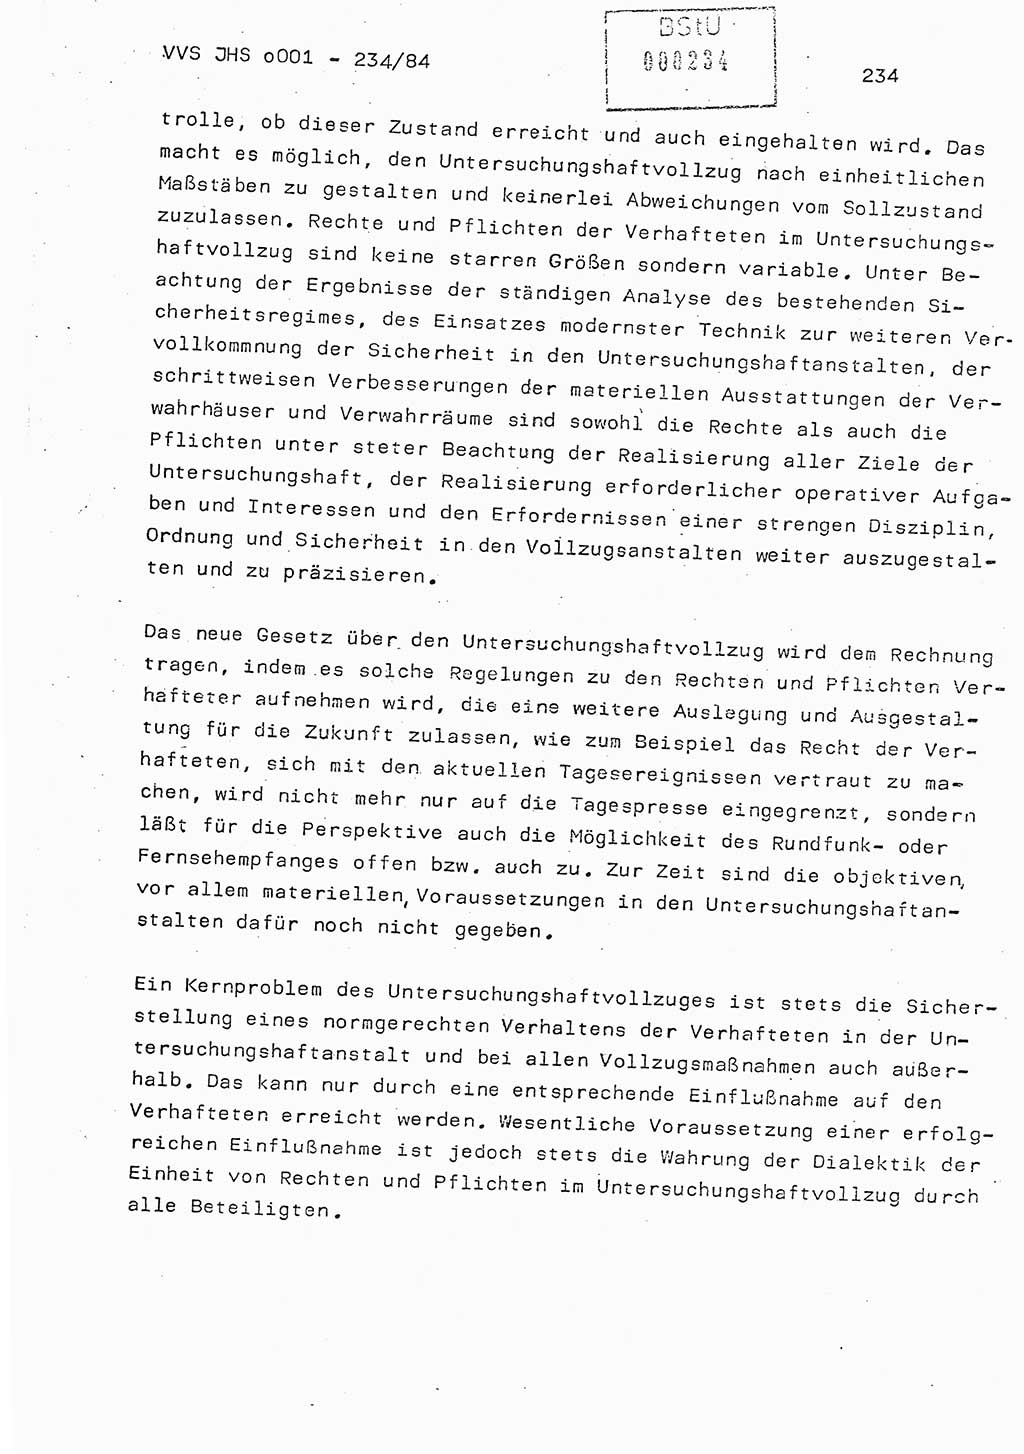 Dissertation Oberst Siegfried Rataizick (Abt. ⅩⅣ), Oberstleutnant Volkmar Heinz (Abt. ⅩⅣ), Oberstleutnant Werner Stein (HA Ⅸ), Hauptmann Heinz Conrad (JHS), Ministerium für Staatssicherheit (MfS) [Deutsche Demokratische Republik (DDR)], Juristische Hochschule (JHS), Vertrauliche Verschlußsache (VVS) o001-234/84, Potsdam 1984, Seite 234 (Diss. MfS DDR JHS VVS o001-234/84 1984, S. 234)